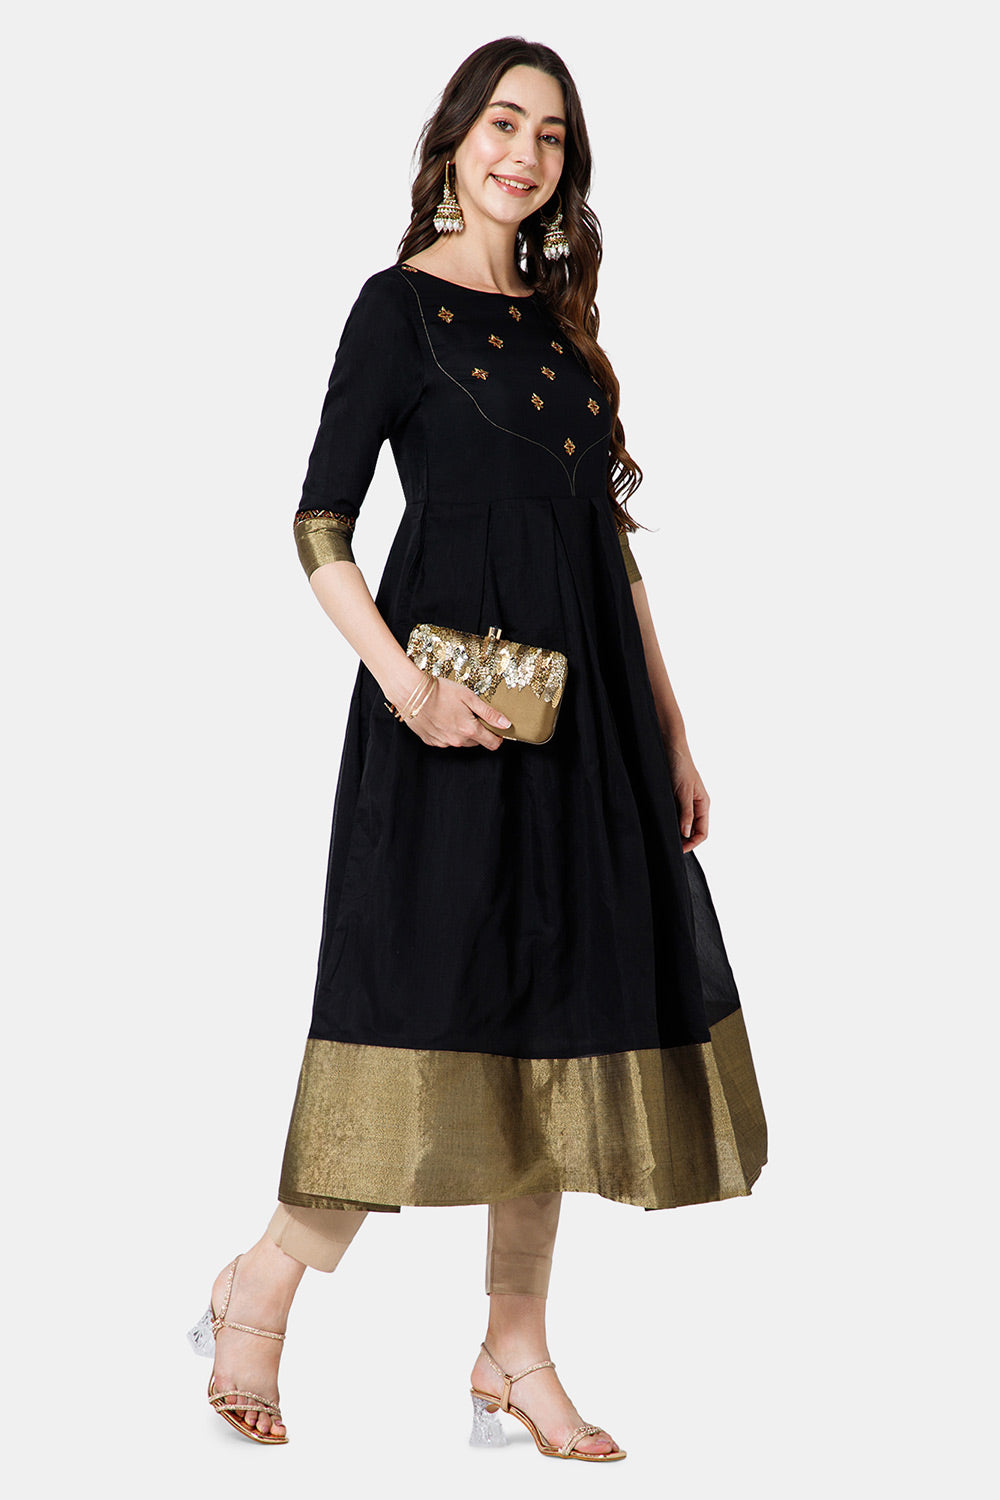 Mythri Women's Ethnic Wear Round Neck Anarkali dress with 3/4 sleeve - Black - KU49